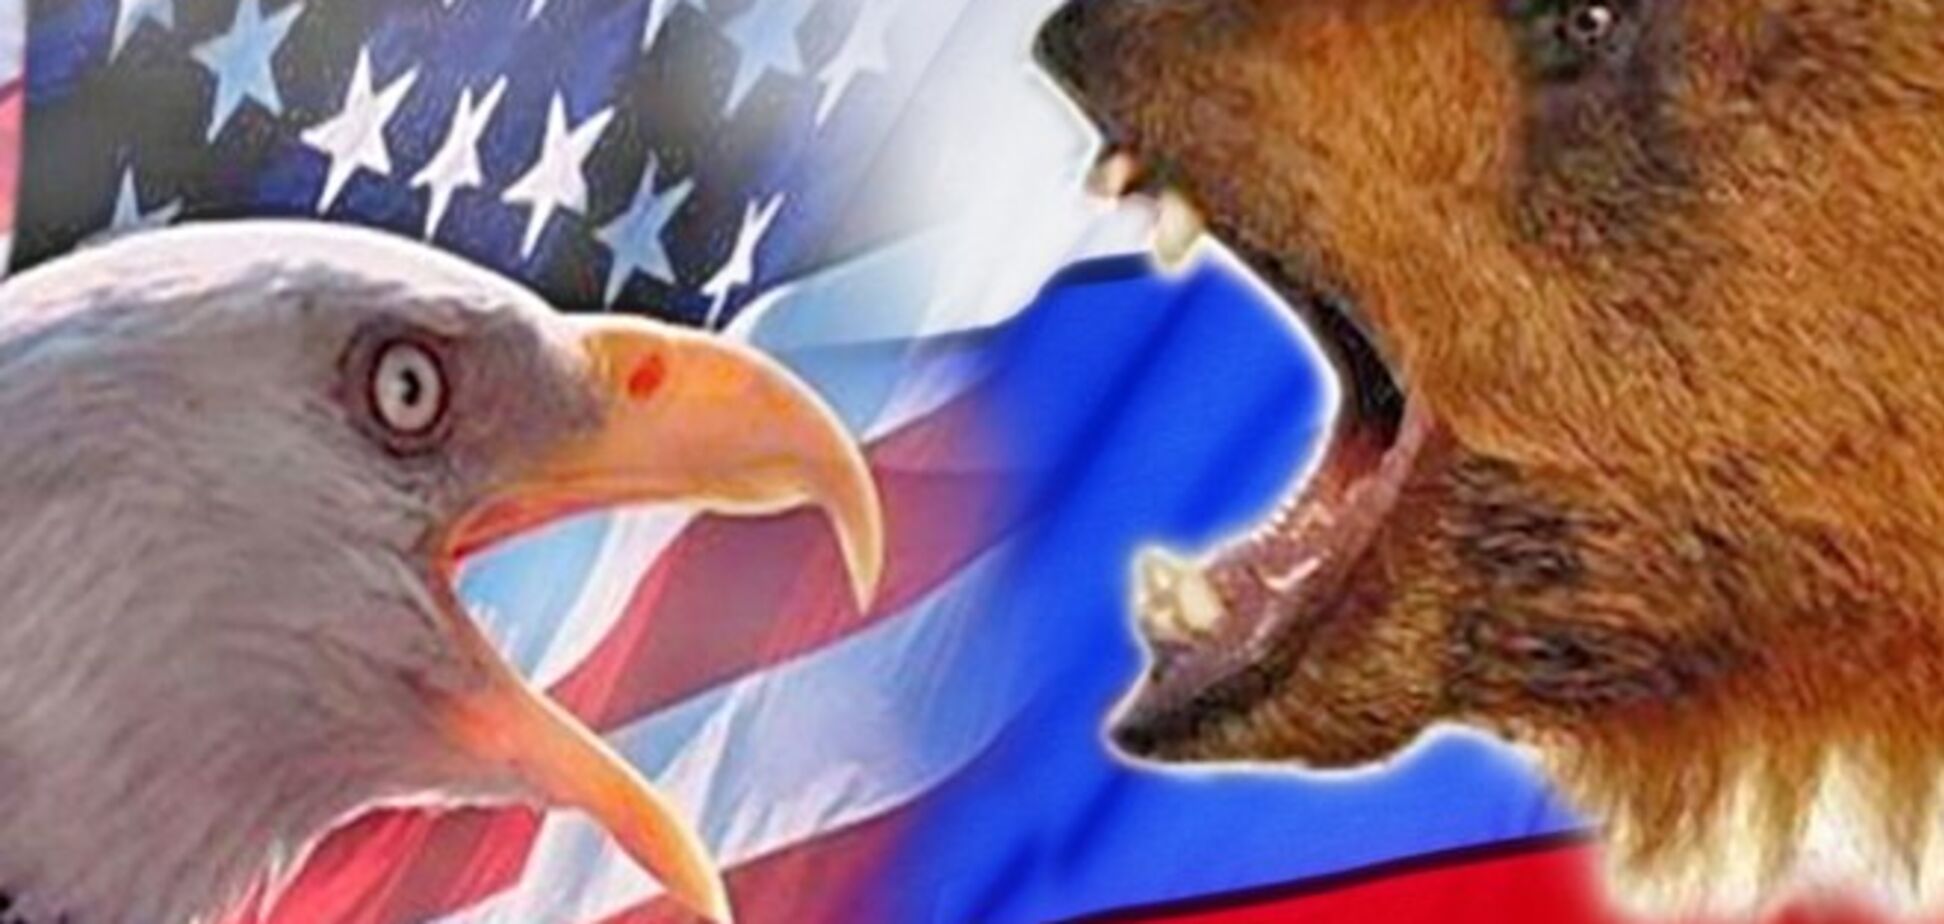 Американцы считают Россию 'главным врагом США' - опрос